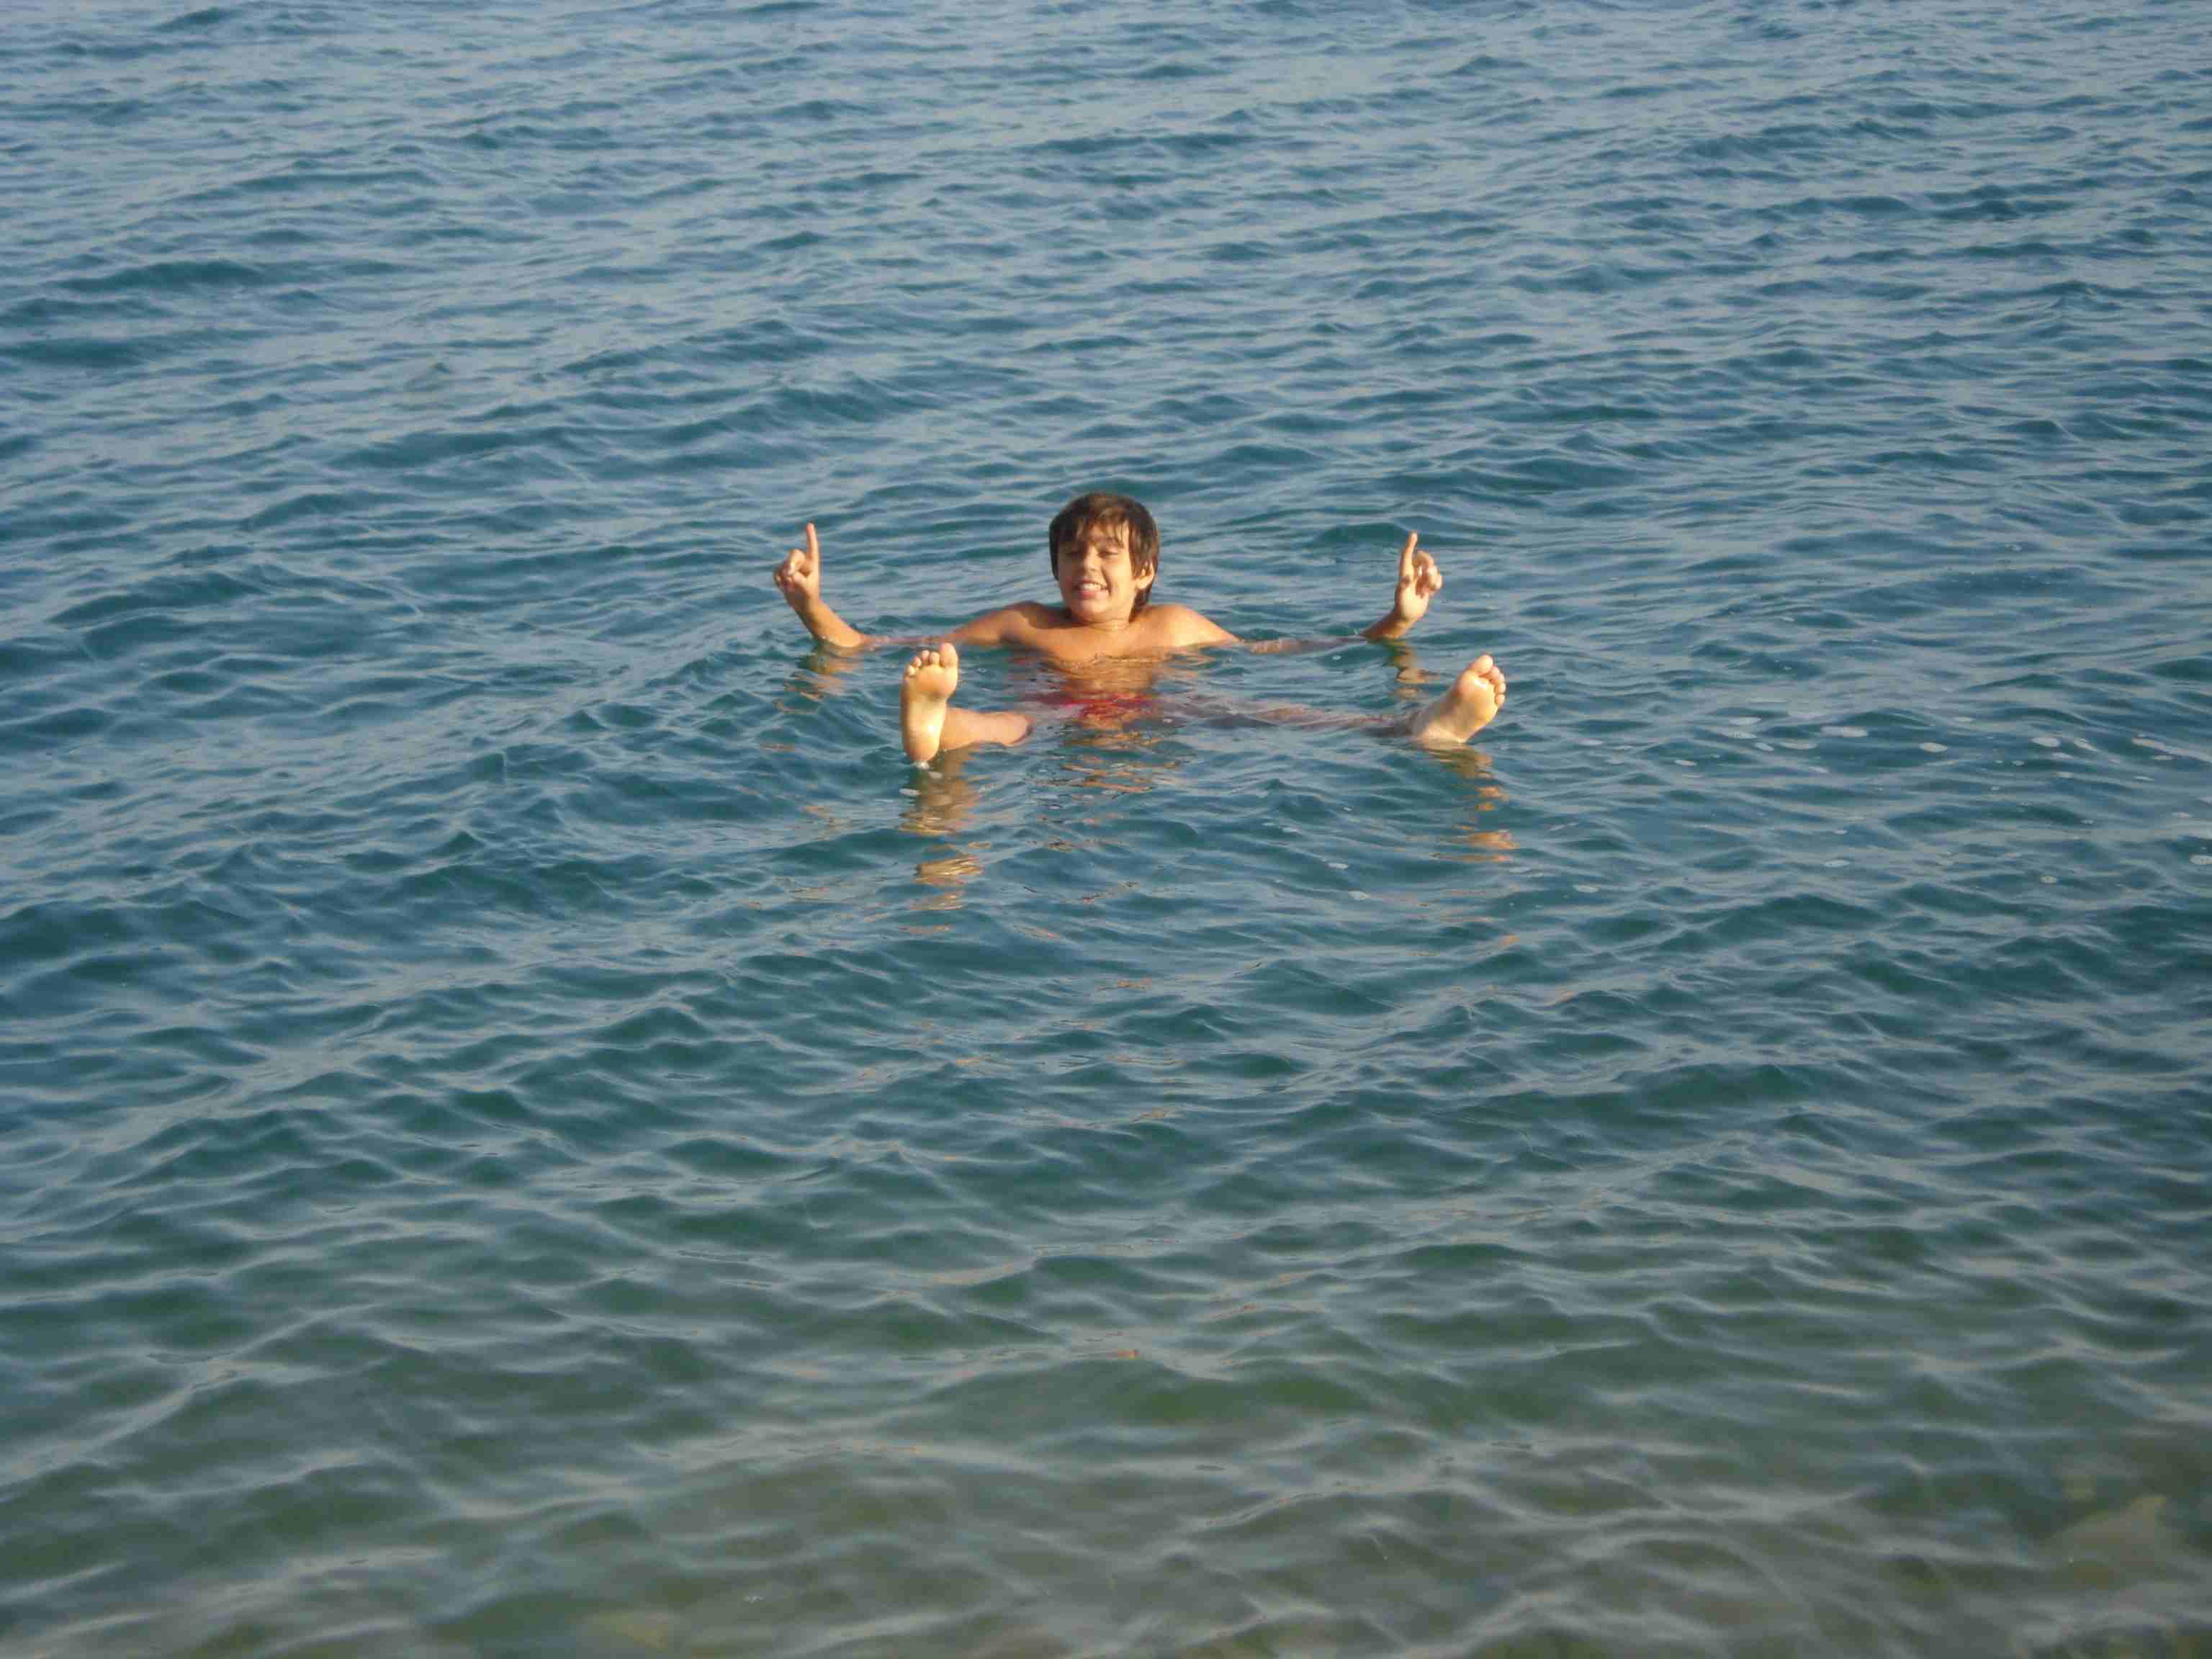 Boiar nas águas salgadas é uma das grandes atrações. O fim do Mar Morto traria consequências para o turismo local  (foto: Pedro Cunha e Menezes)